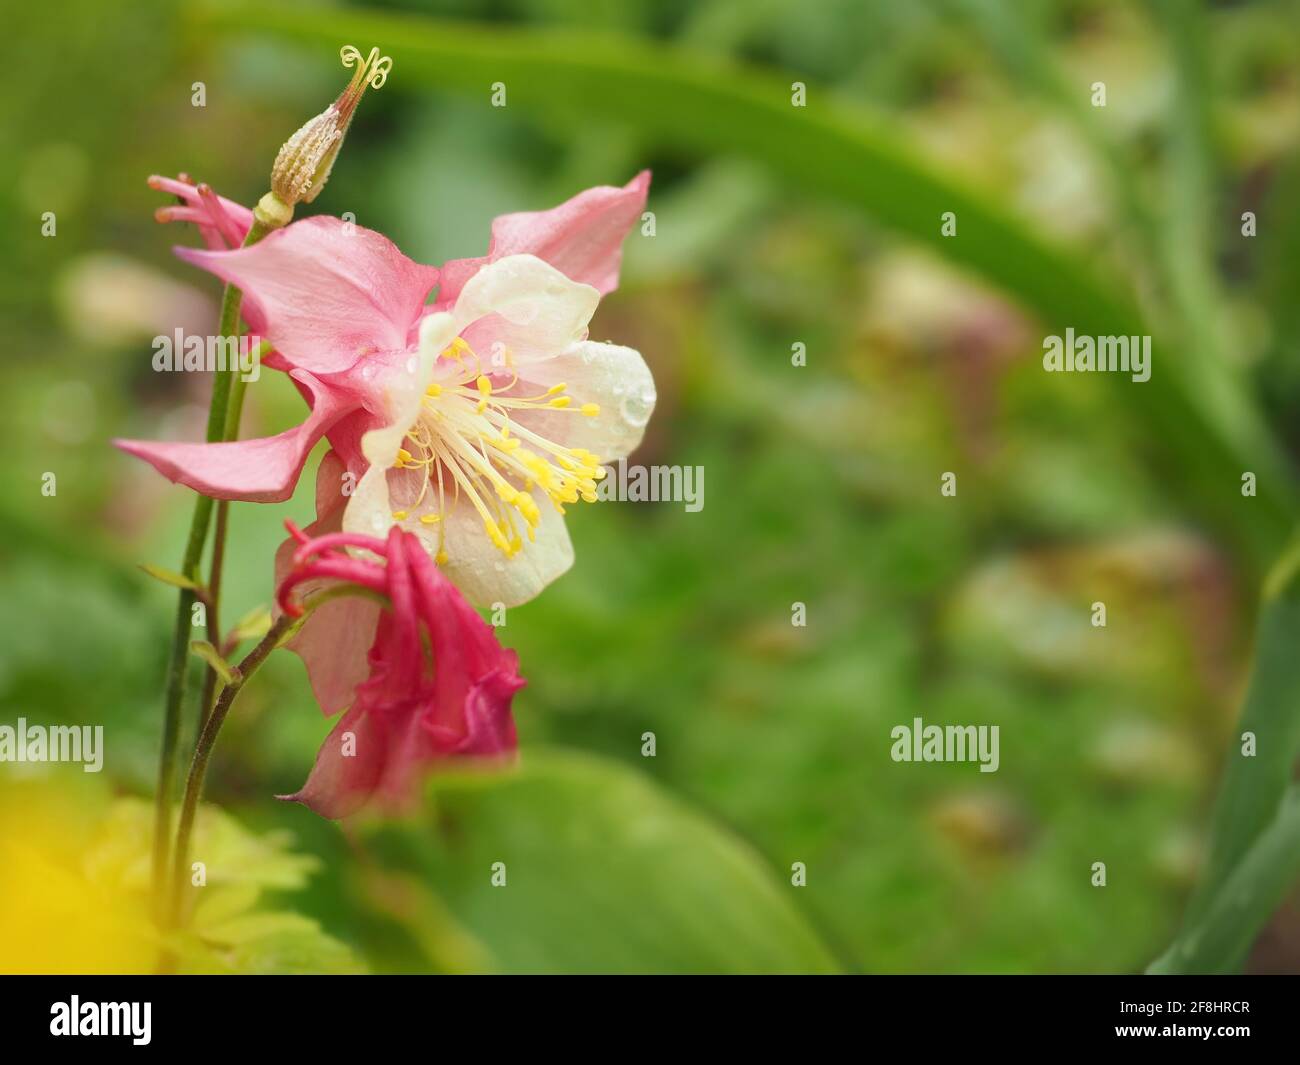 Pink Columbine Aquilegia flowers in a garden Stock Photo